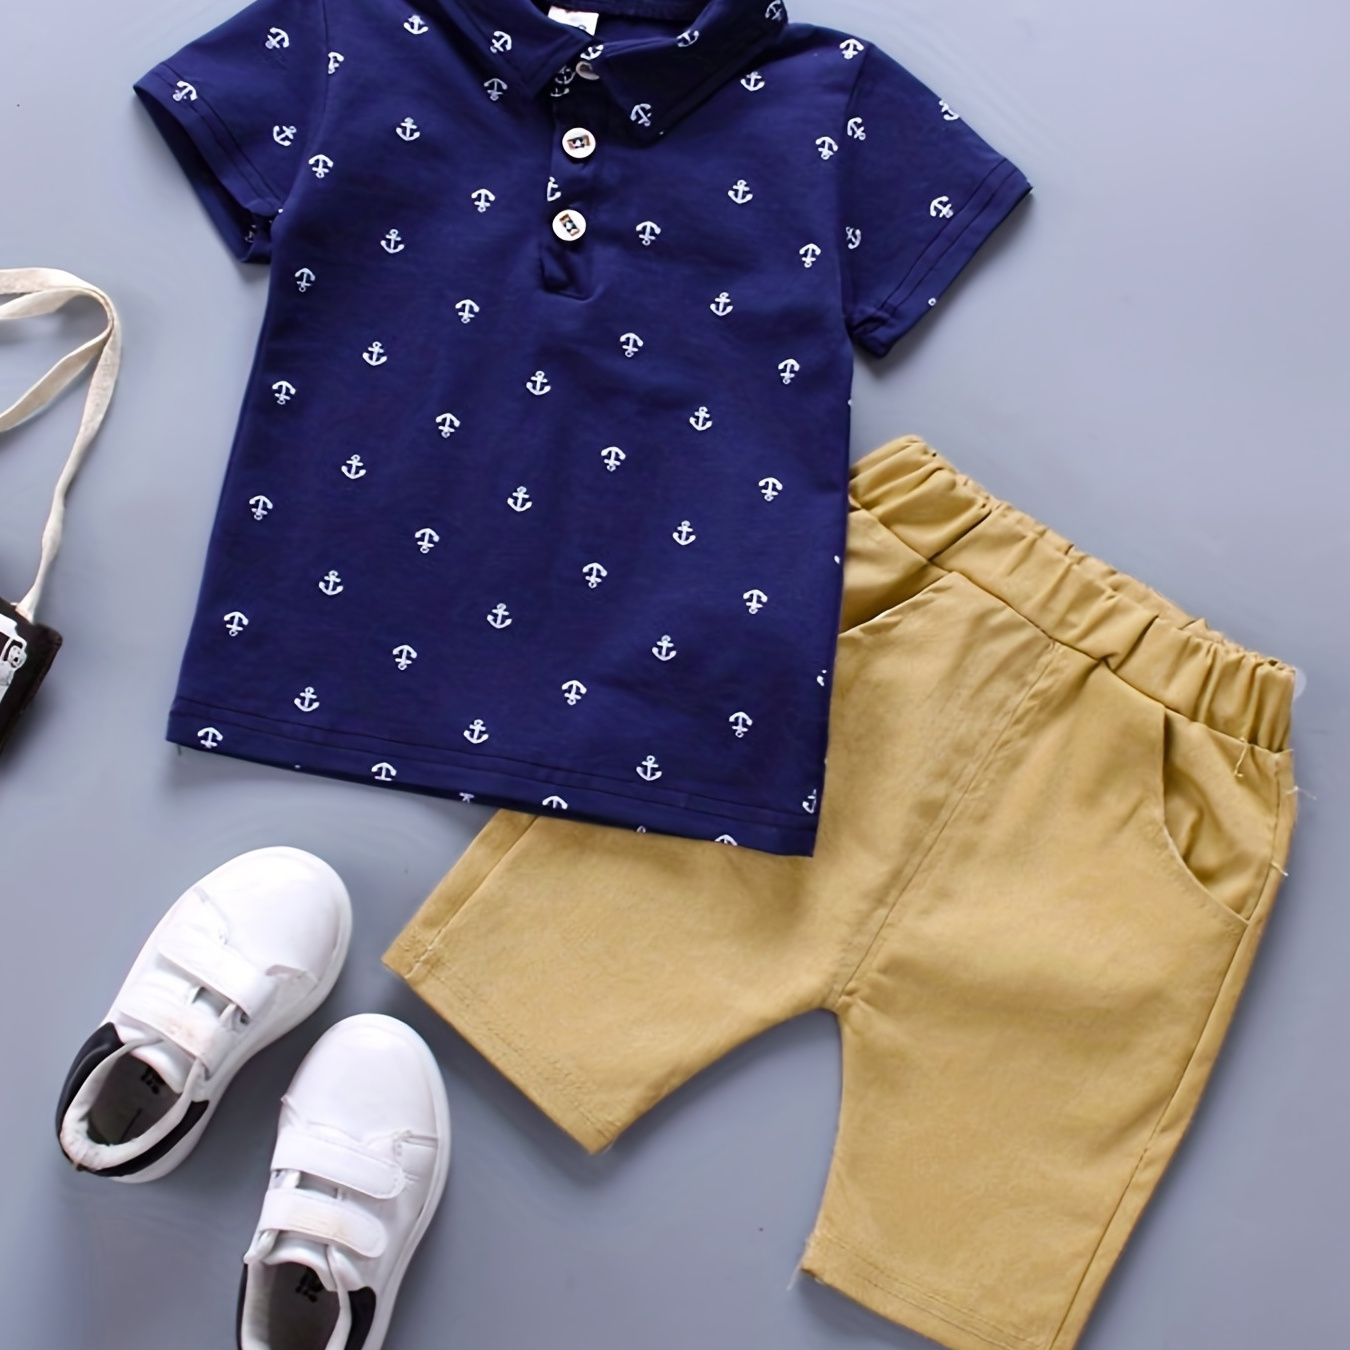 

Adorable & Shorts Set For Your Little Sailor - 2pcs Baby Boys Clothes